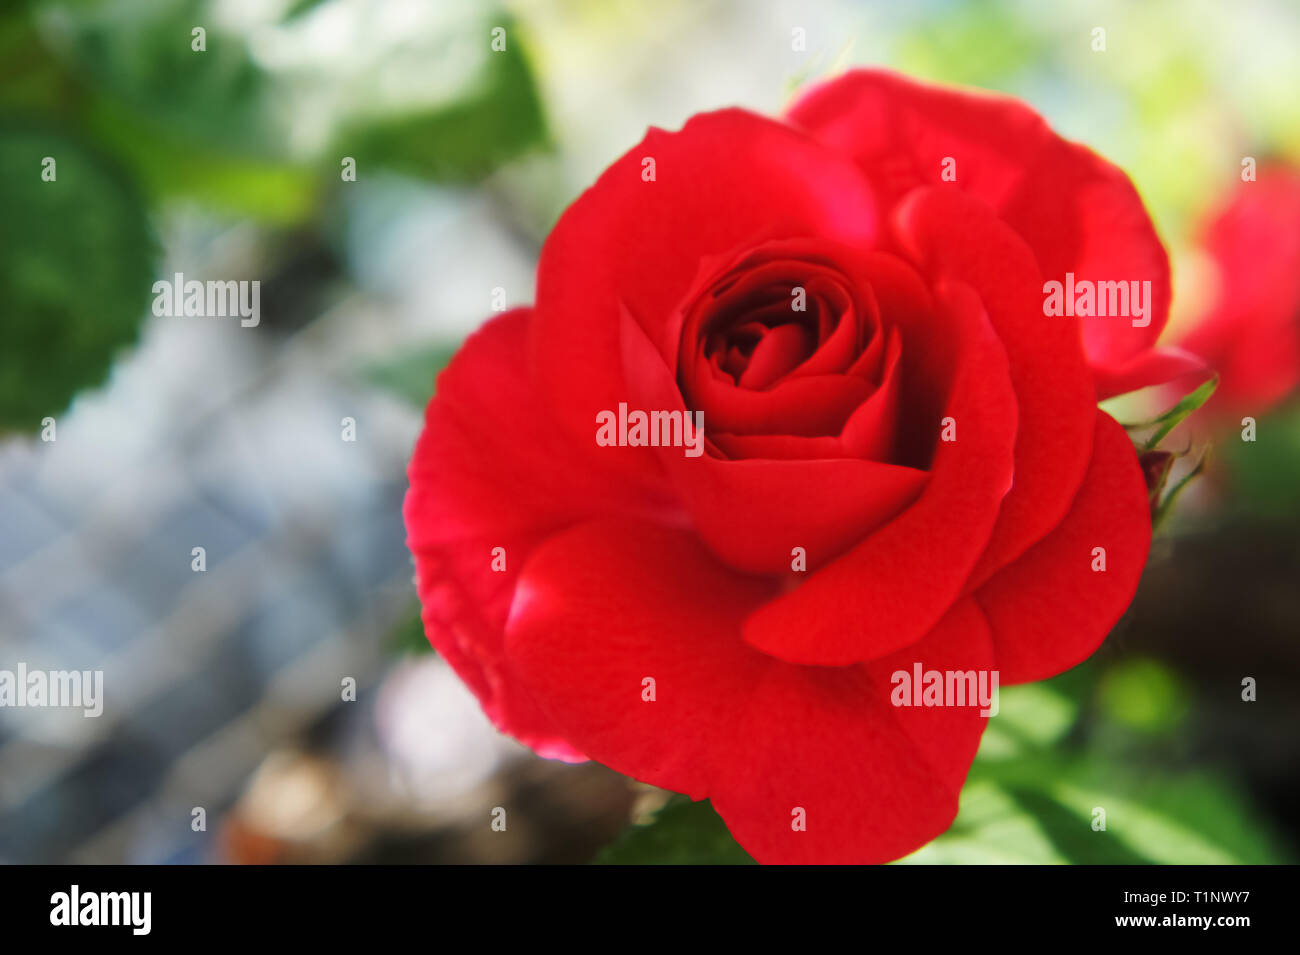 Rosen auf einem Busch. rote Rosen im Garten. Schönes blühende rote Rose  Blumen Stockfotografie - Alamy